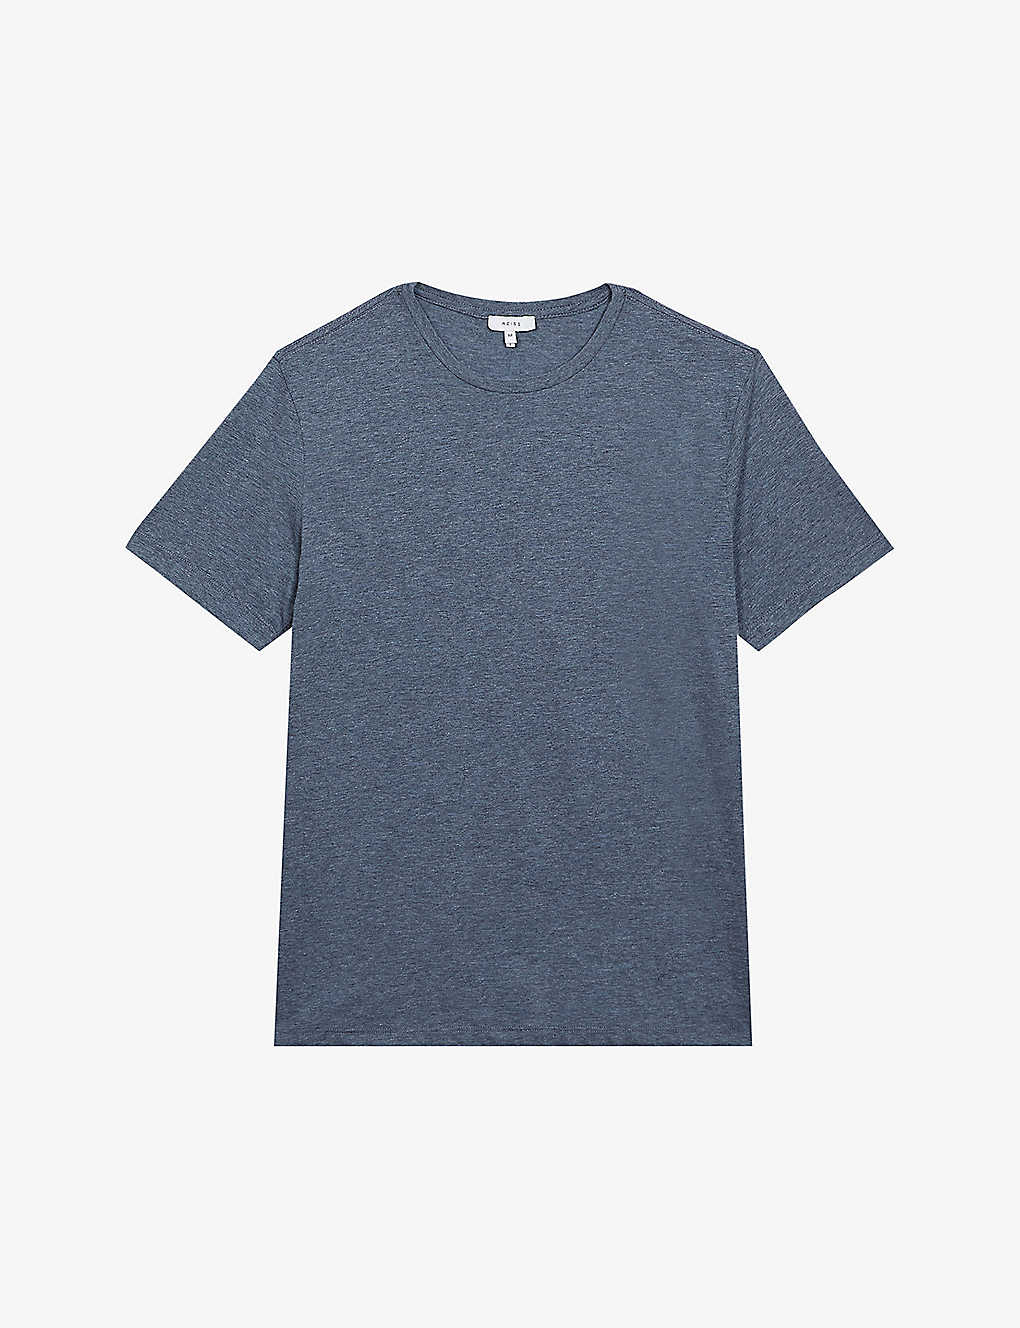 Shop Reiss Men's Airforce Blue M Bless Regular-fit Cotton-jersey T-shirt